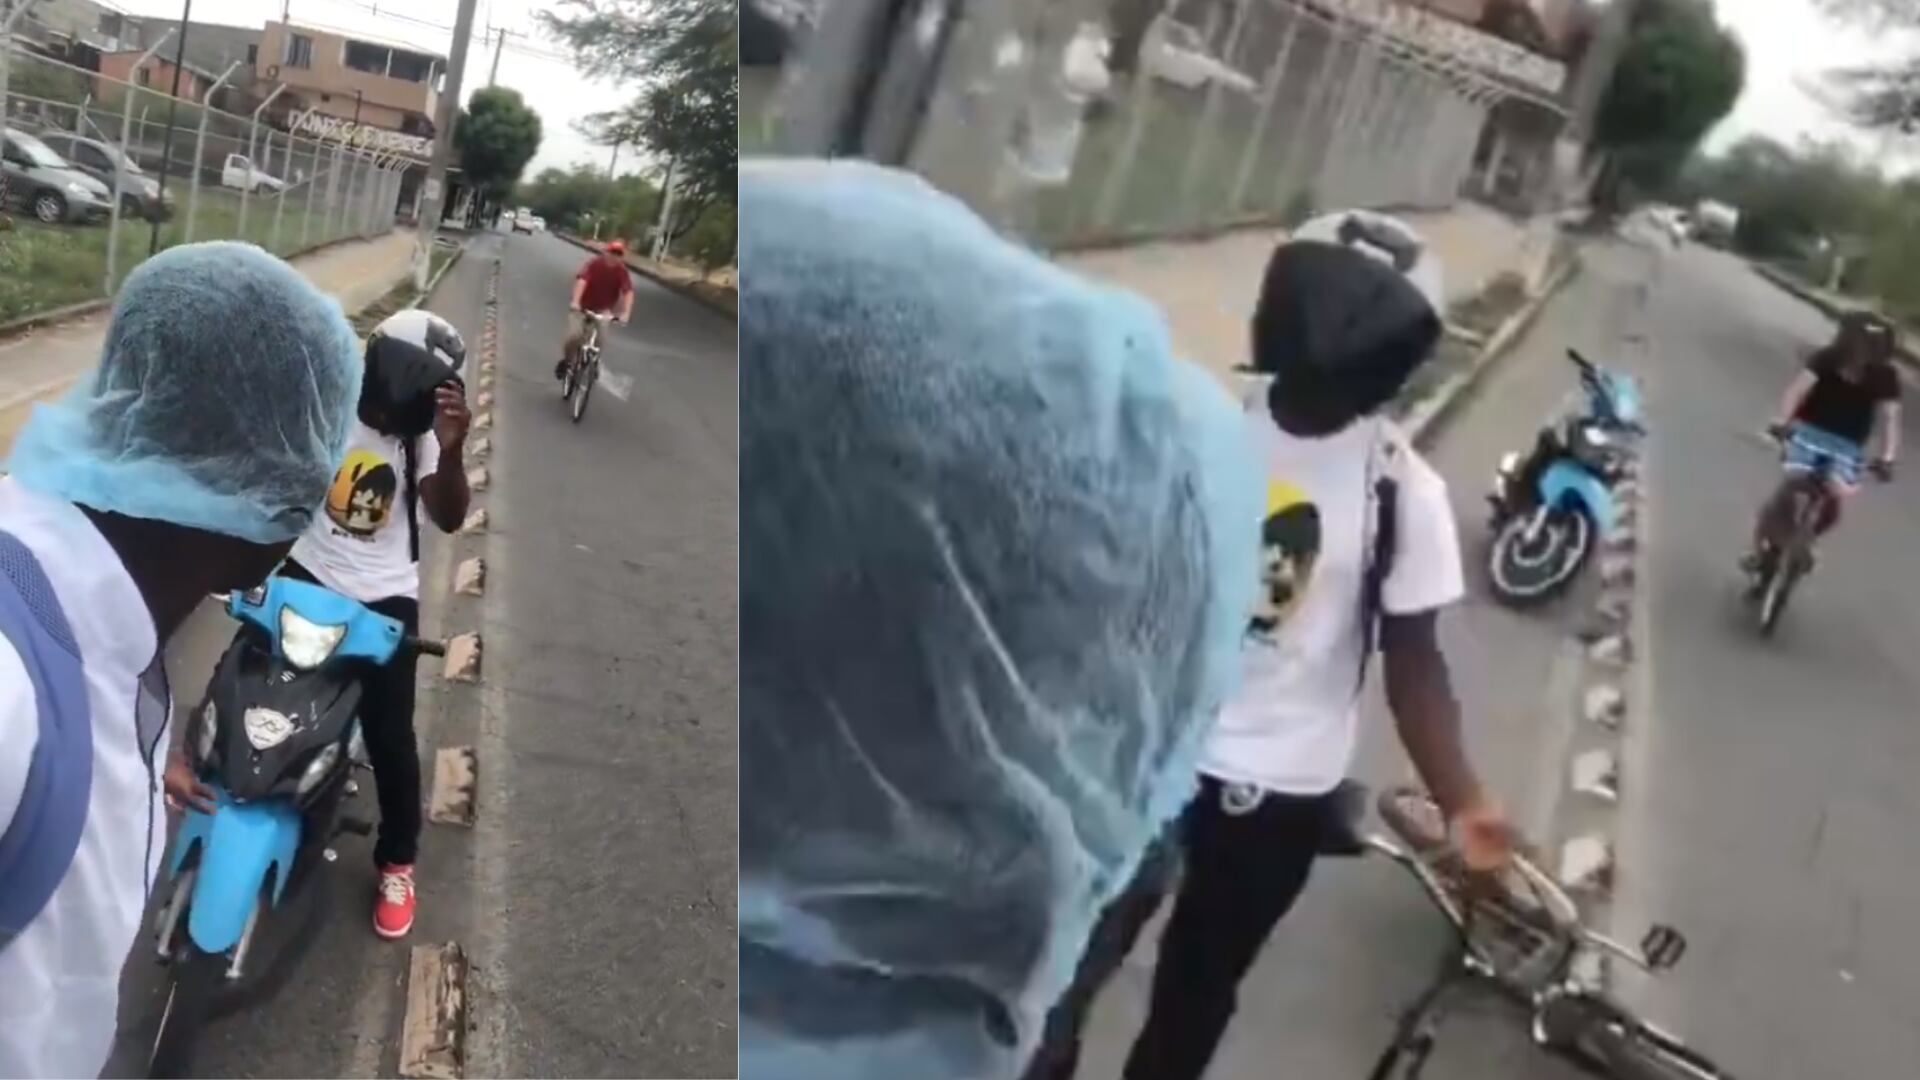 Acto de violencia en Cali: mosotciclista agredió a ciclista por reclamarle sobre invasión de carril - crédito redes sociales/X